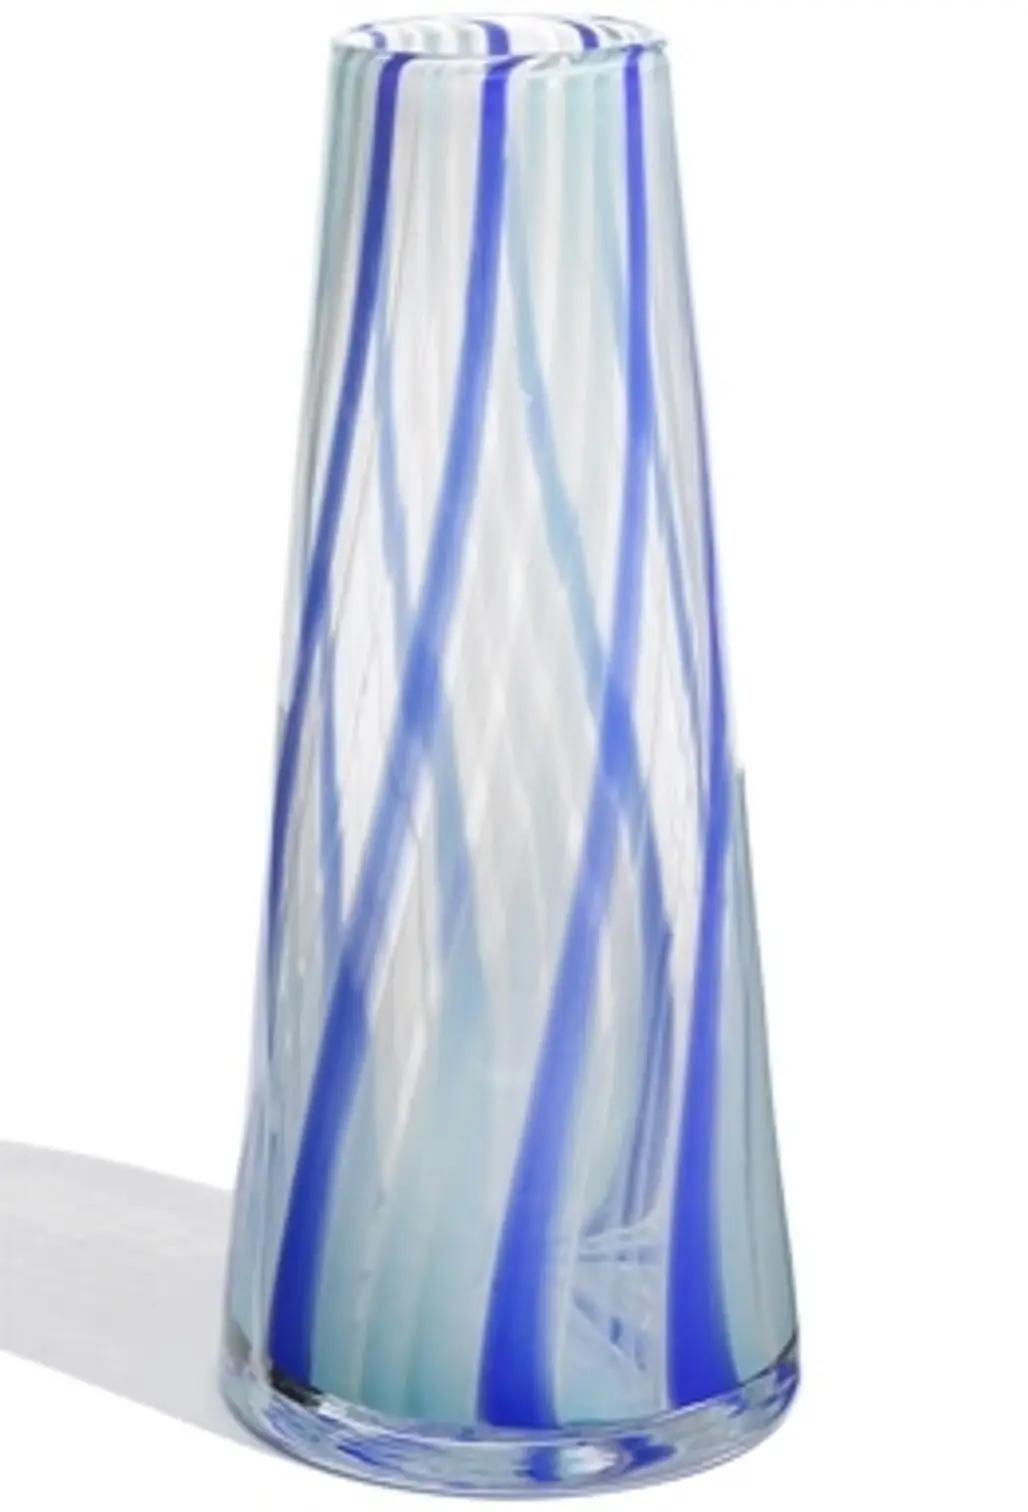 Kosta Boda “Cabana” Crystal Vase